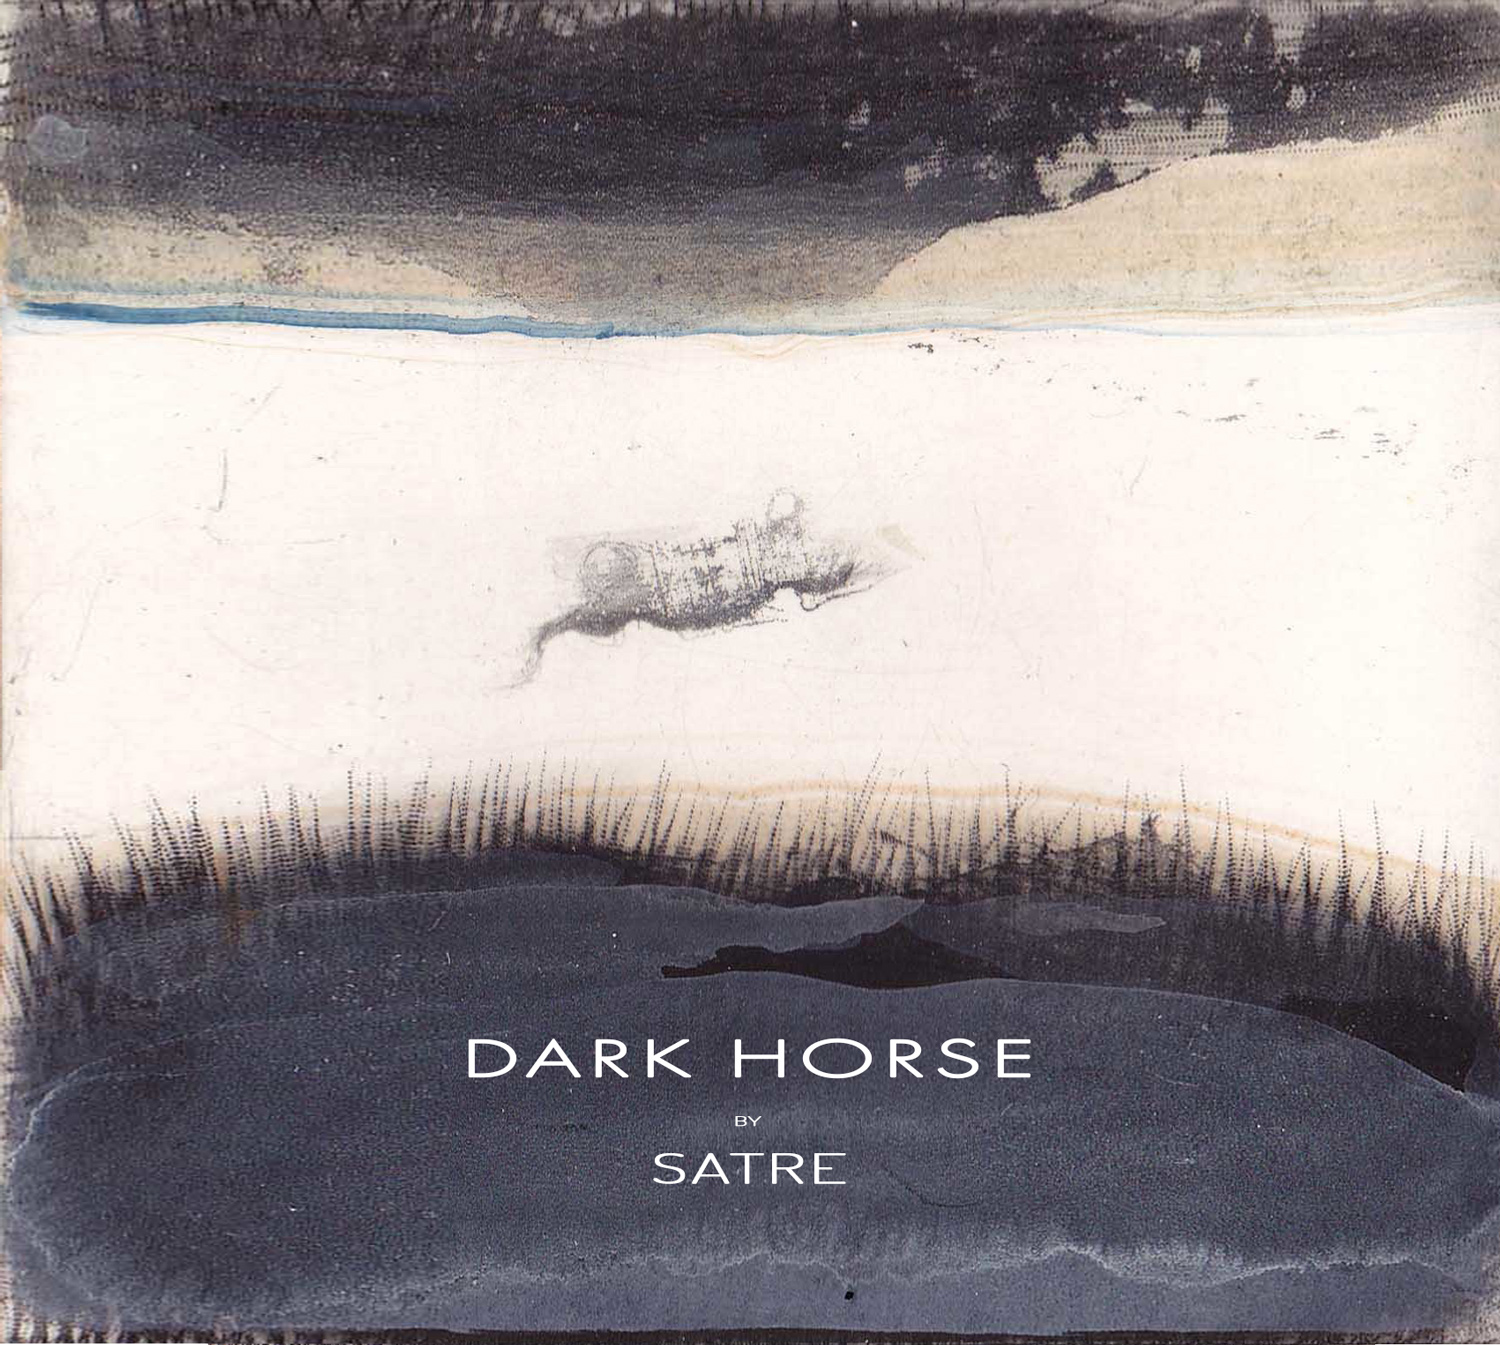 dark-horse-front-1500-geir-satre.jpg